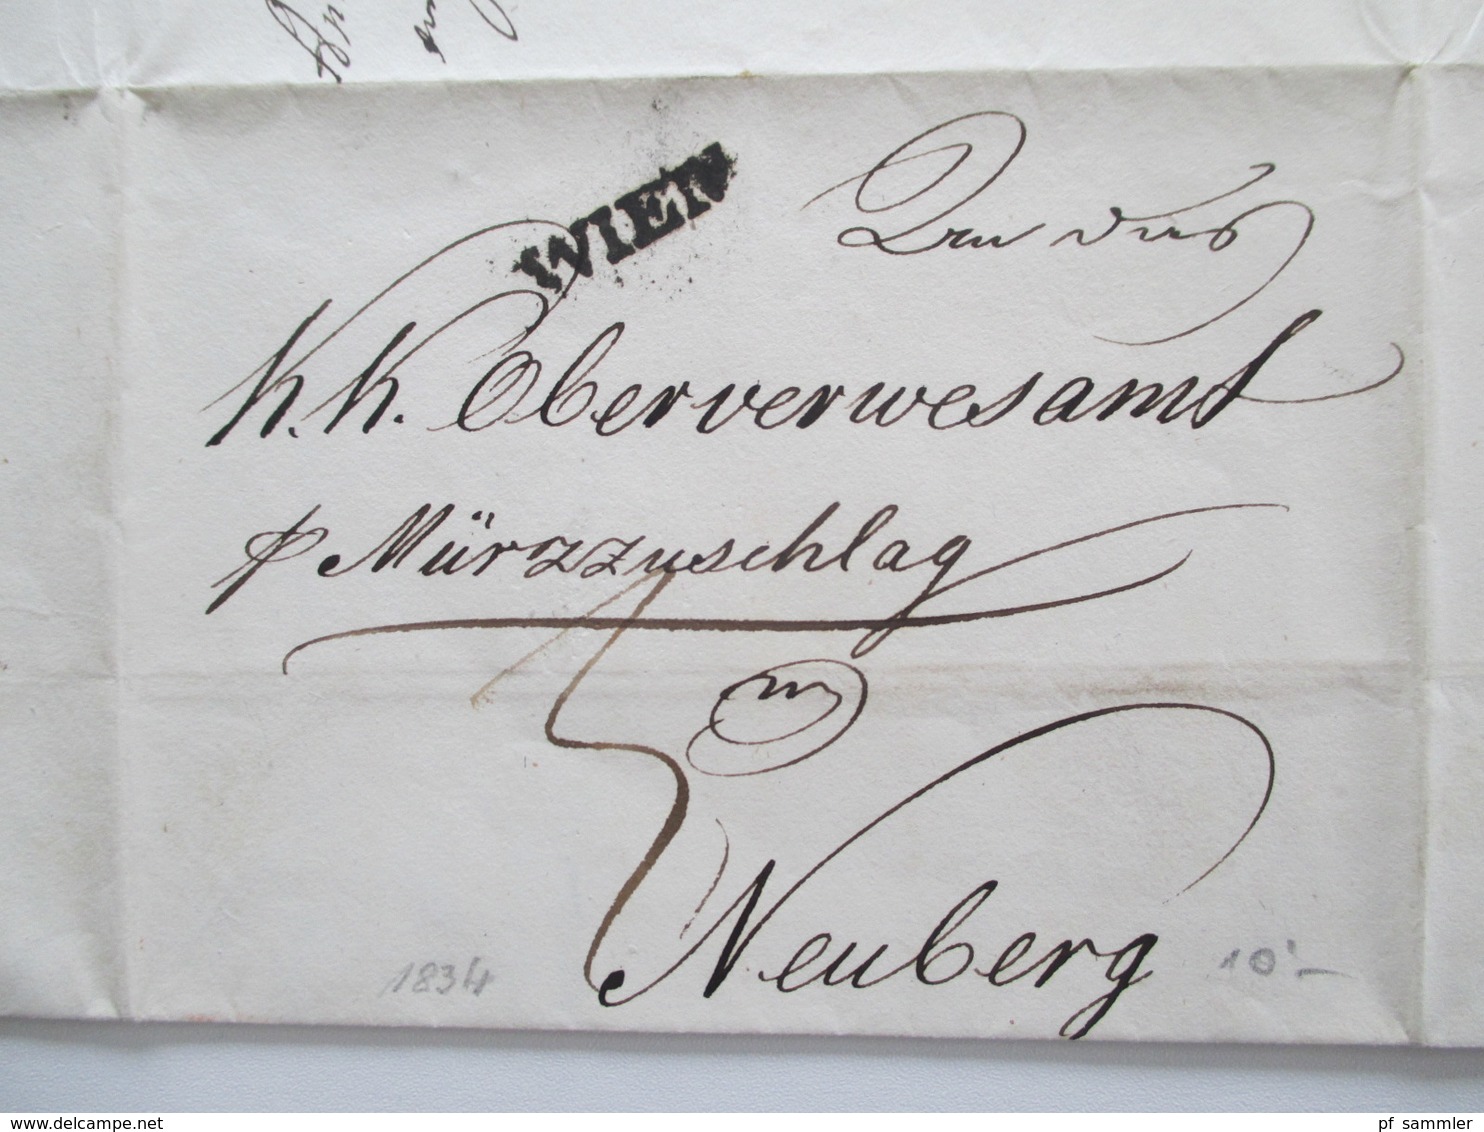 Österreich Vorphila 15 Belege Wien Stempel schwarz / rot viele mit Inhalt! 1824 - 1848 KuK. 2x Stempel Grosz - Gerungs